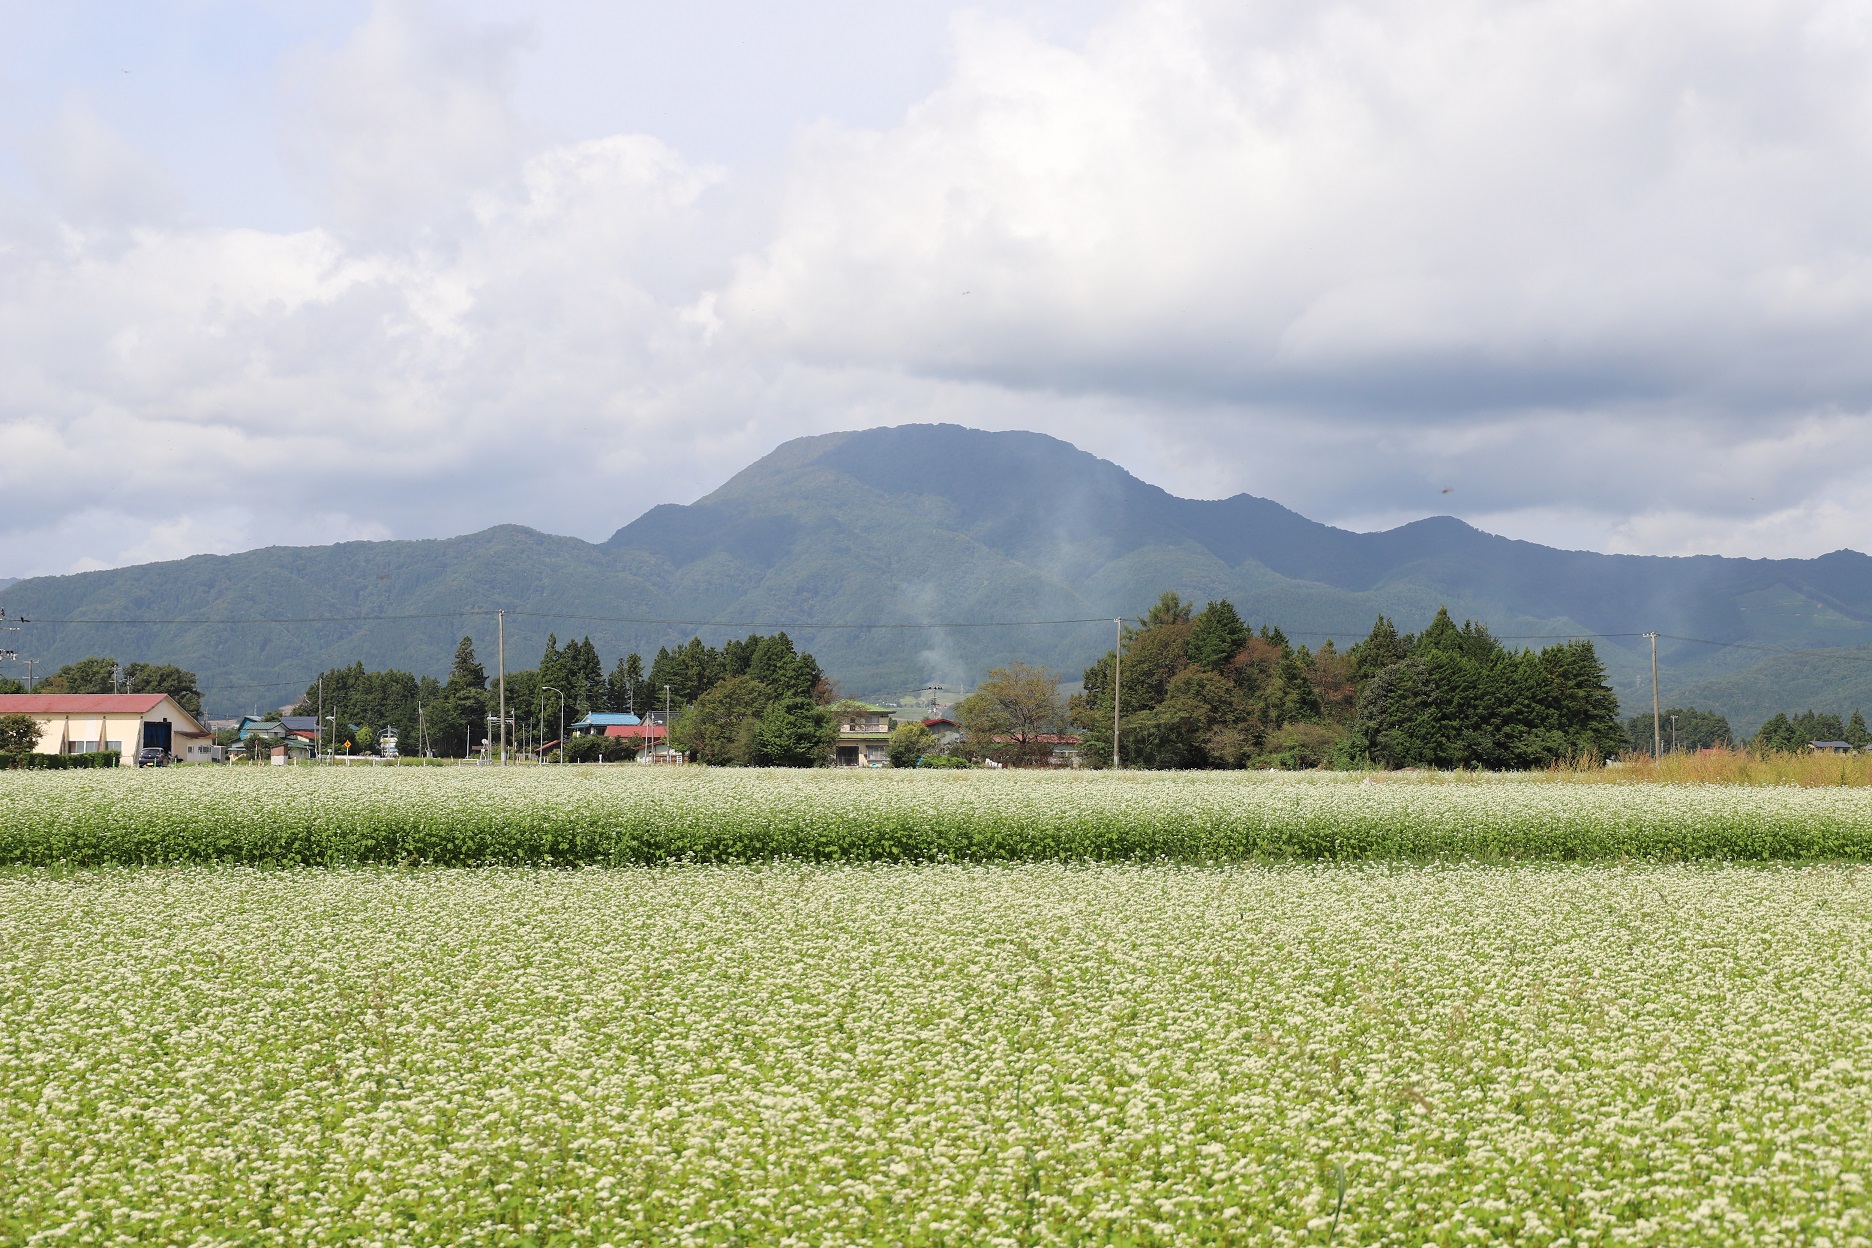 こたつ山の愛称で親しまれる東根山と蕎麦畑の蕎麦の花